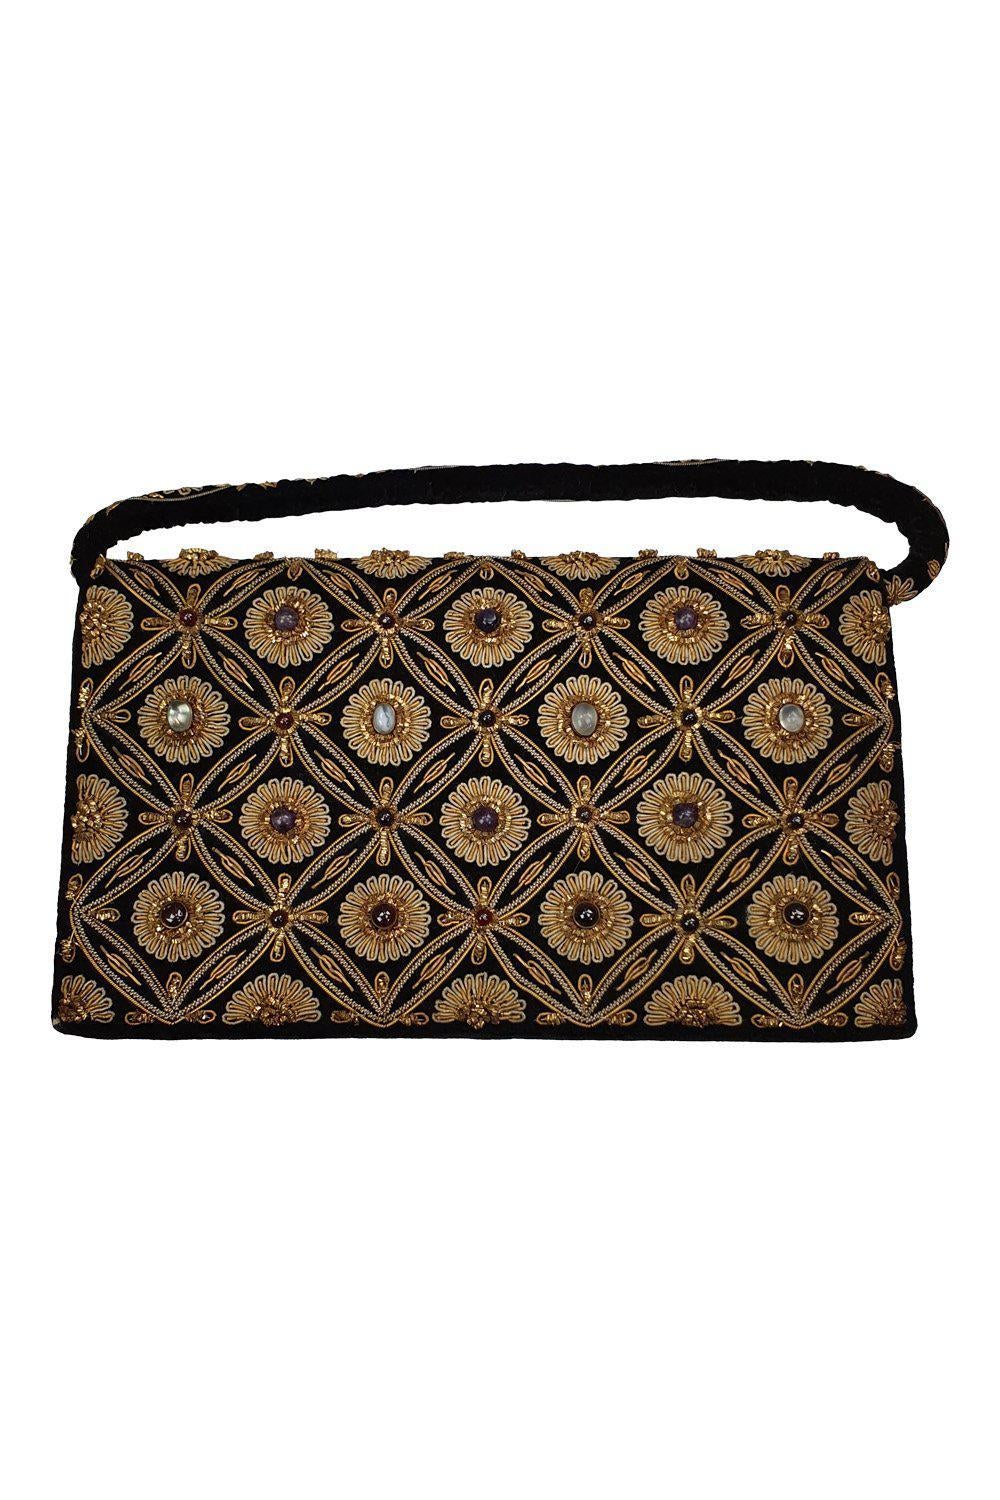 VINTAGE Black Velvet Jewel Embellished Embroidered Zardozi Handbag (S)-Unbranded-The Freperie